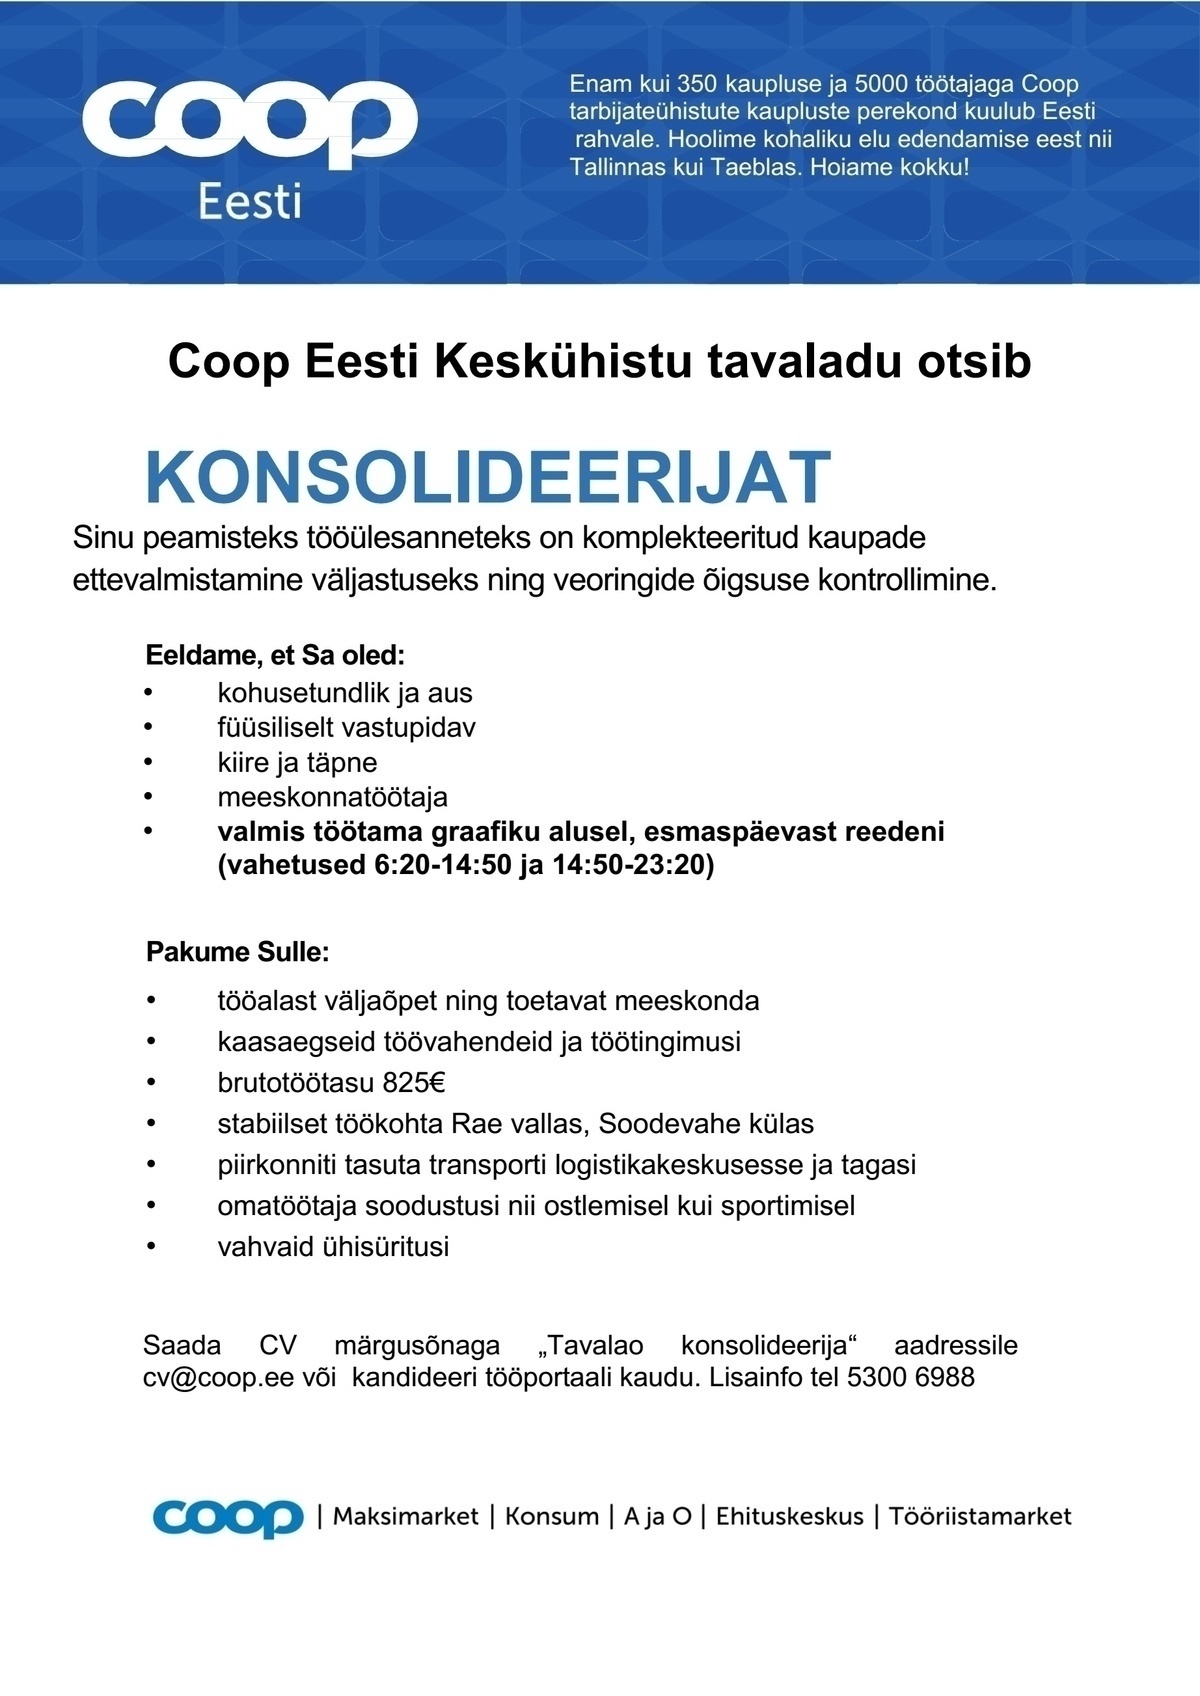 Coop Eesti Keskühistu Konsolideerija (tavaladu)